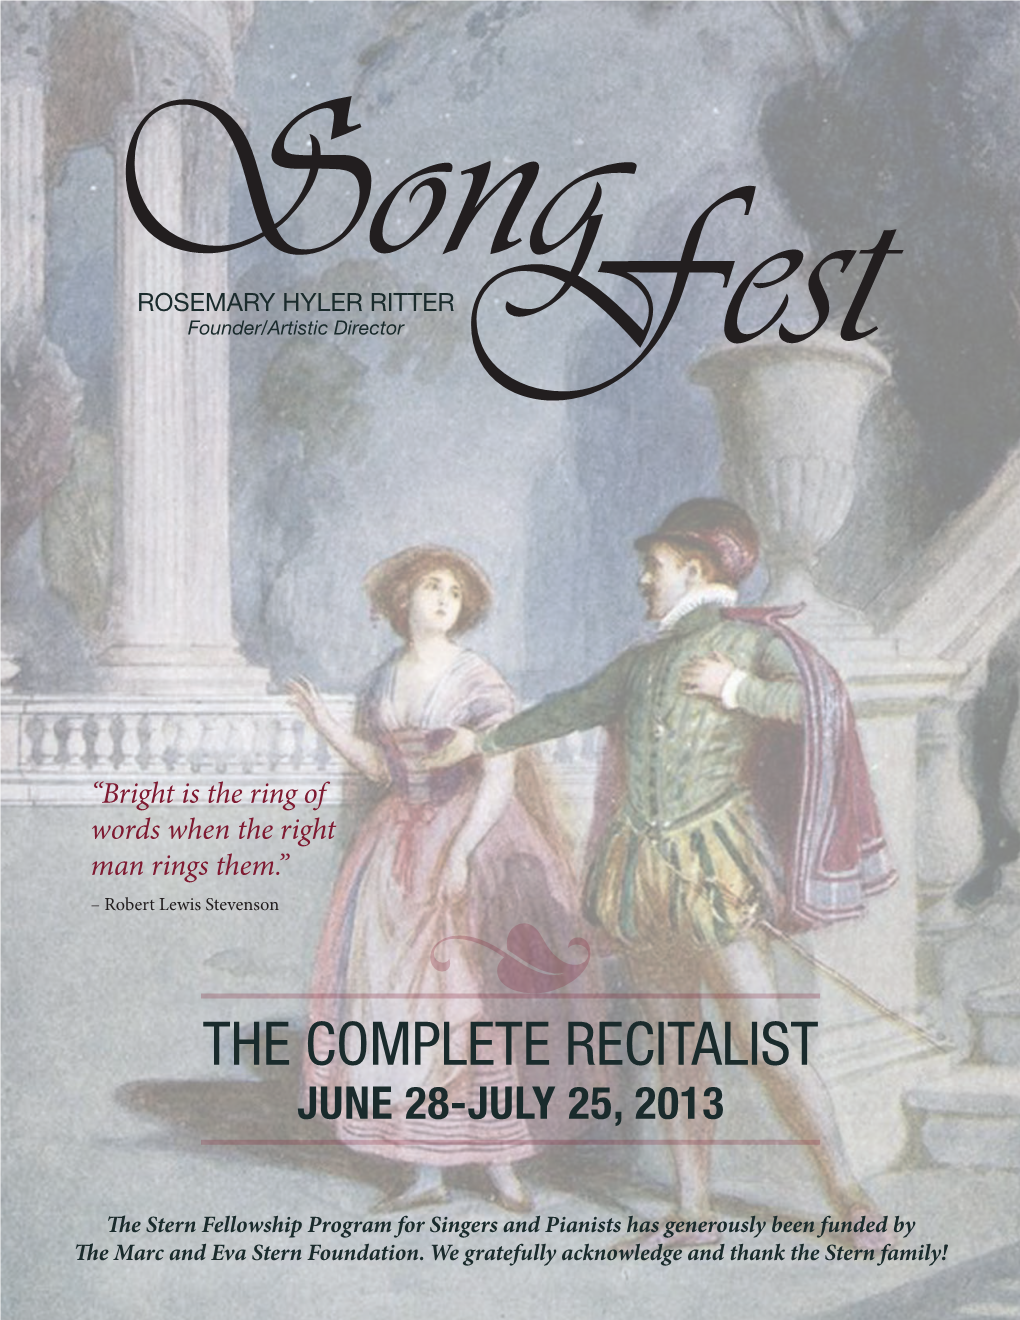 The Complete Recitalist June 28-July 25, 2013